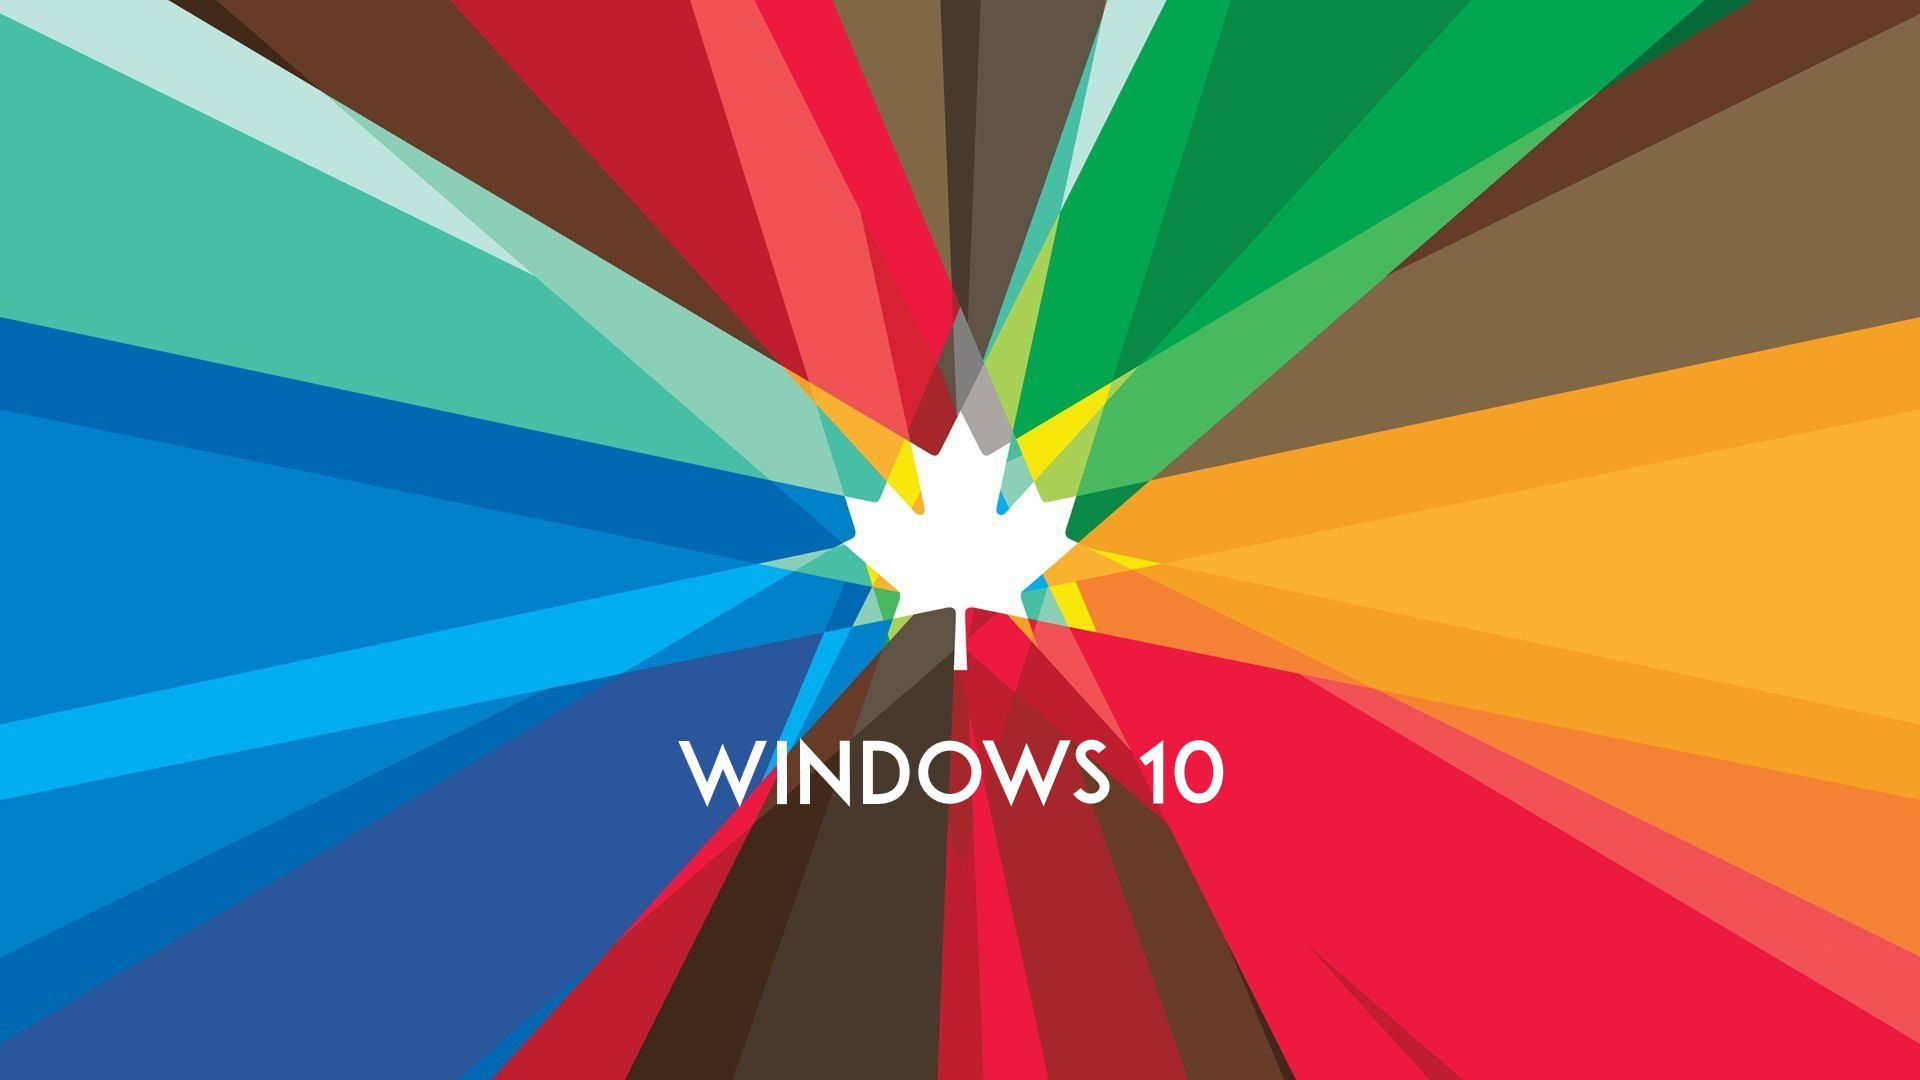 Windows 10 Wallpaper HD | PixelsTalk.Net